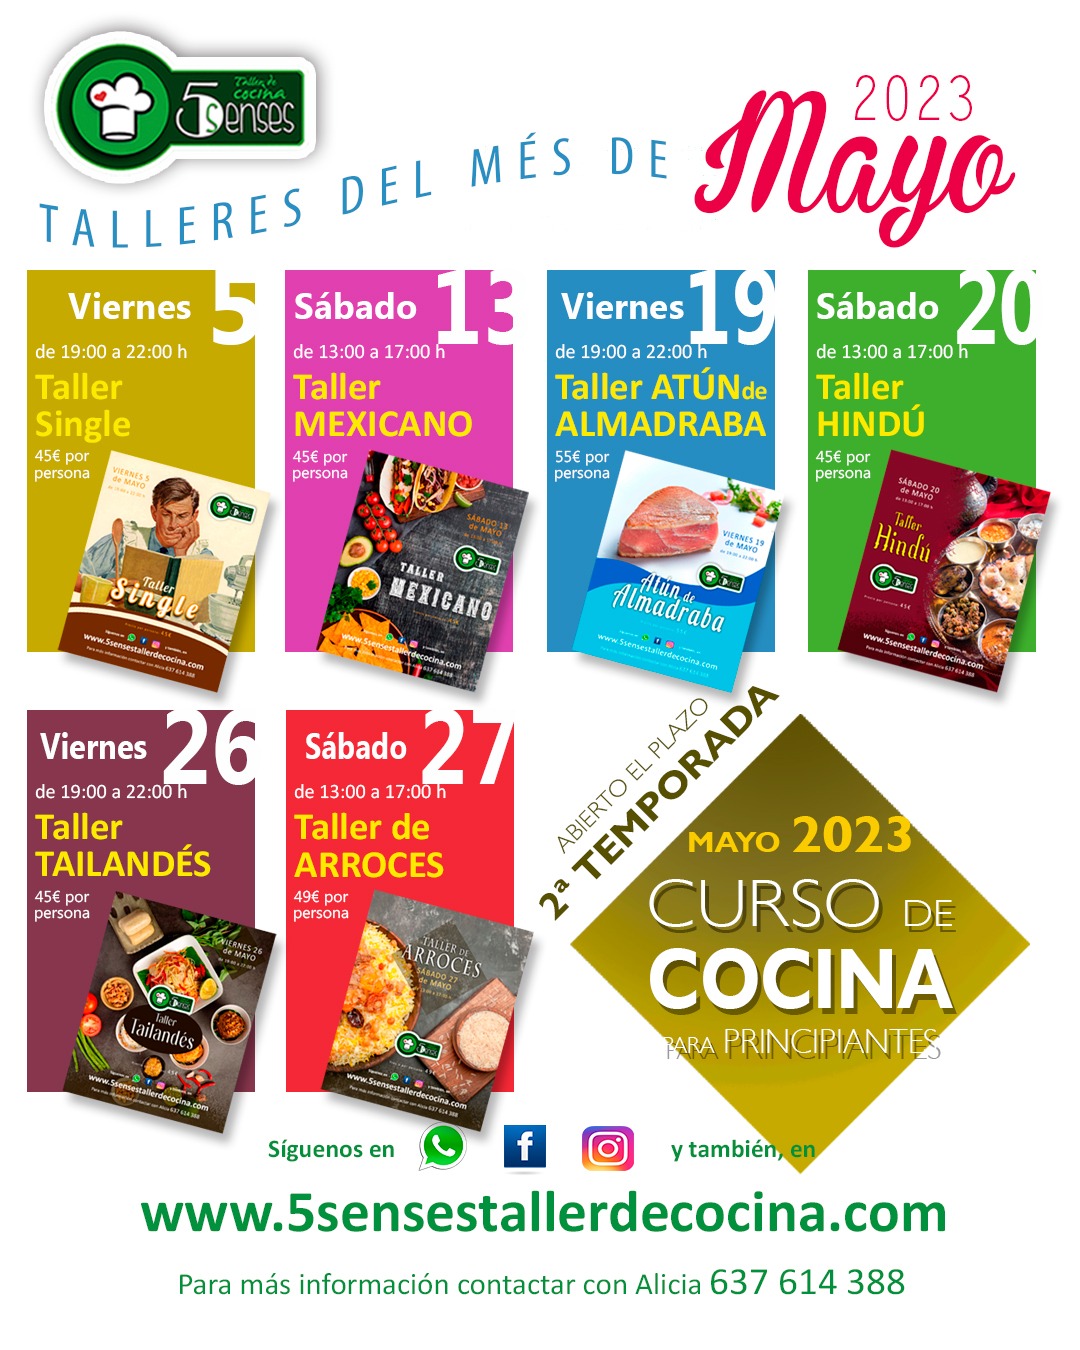 Talleres de Cocina en Mayo de 2023 en Jerez